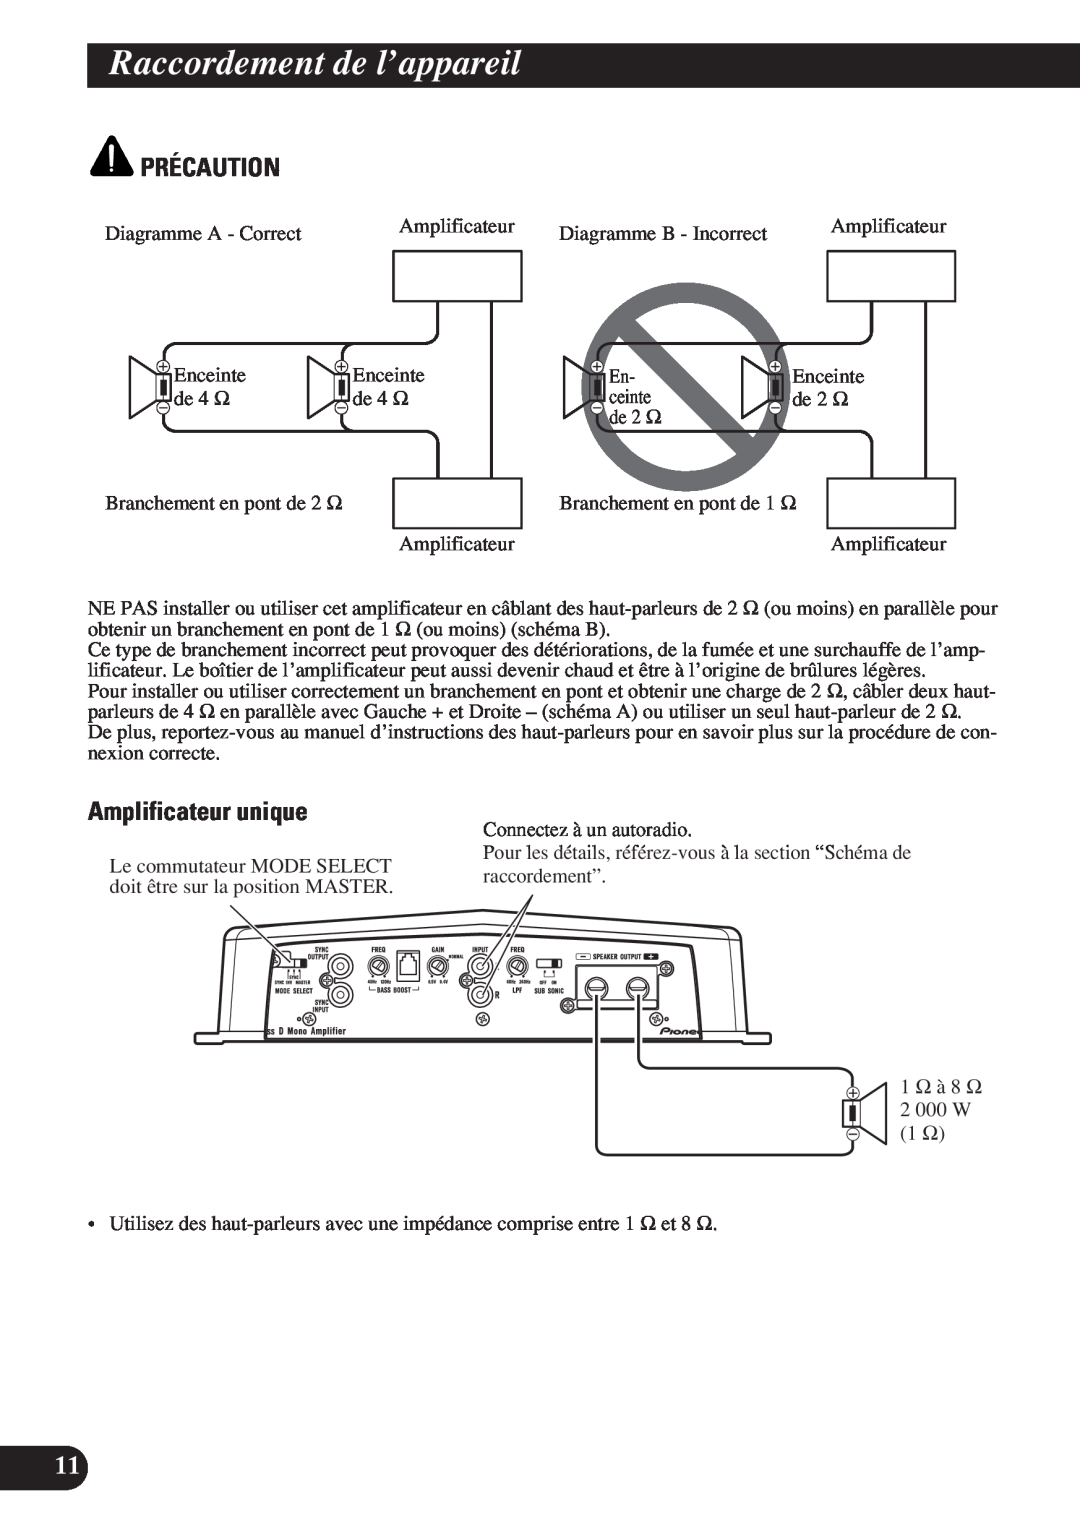 Pioneer D2000SPL owner manual Amplificateur unique, Raccordement de l’appareil, Précaution 